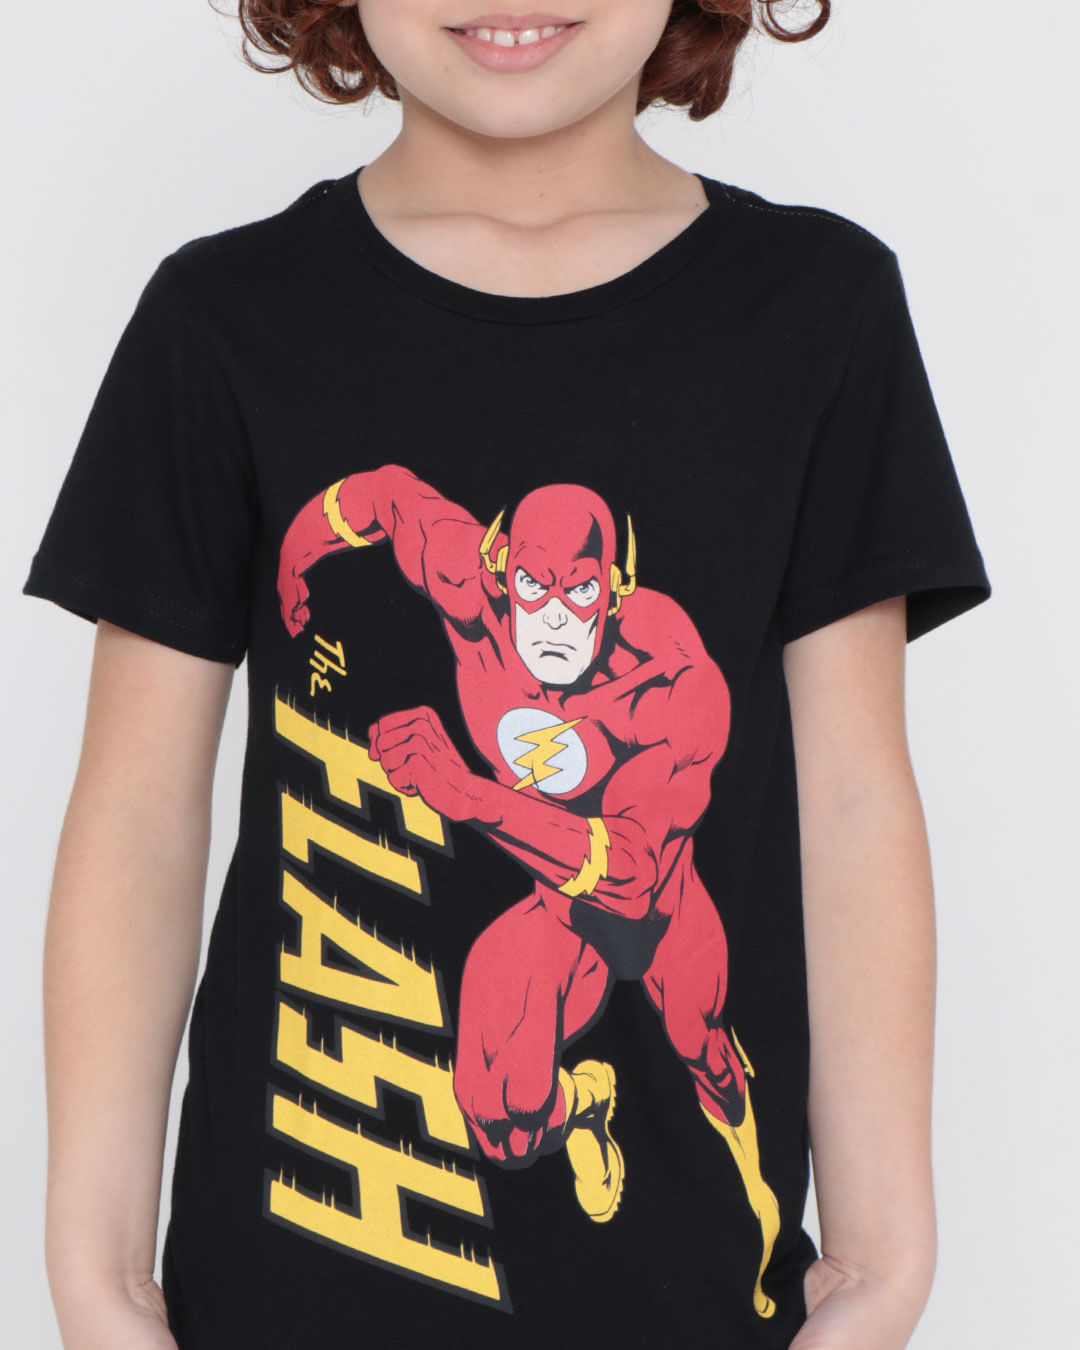 Camiseta-Infantil-Liga-da-Justica-Flash-Preta